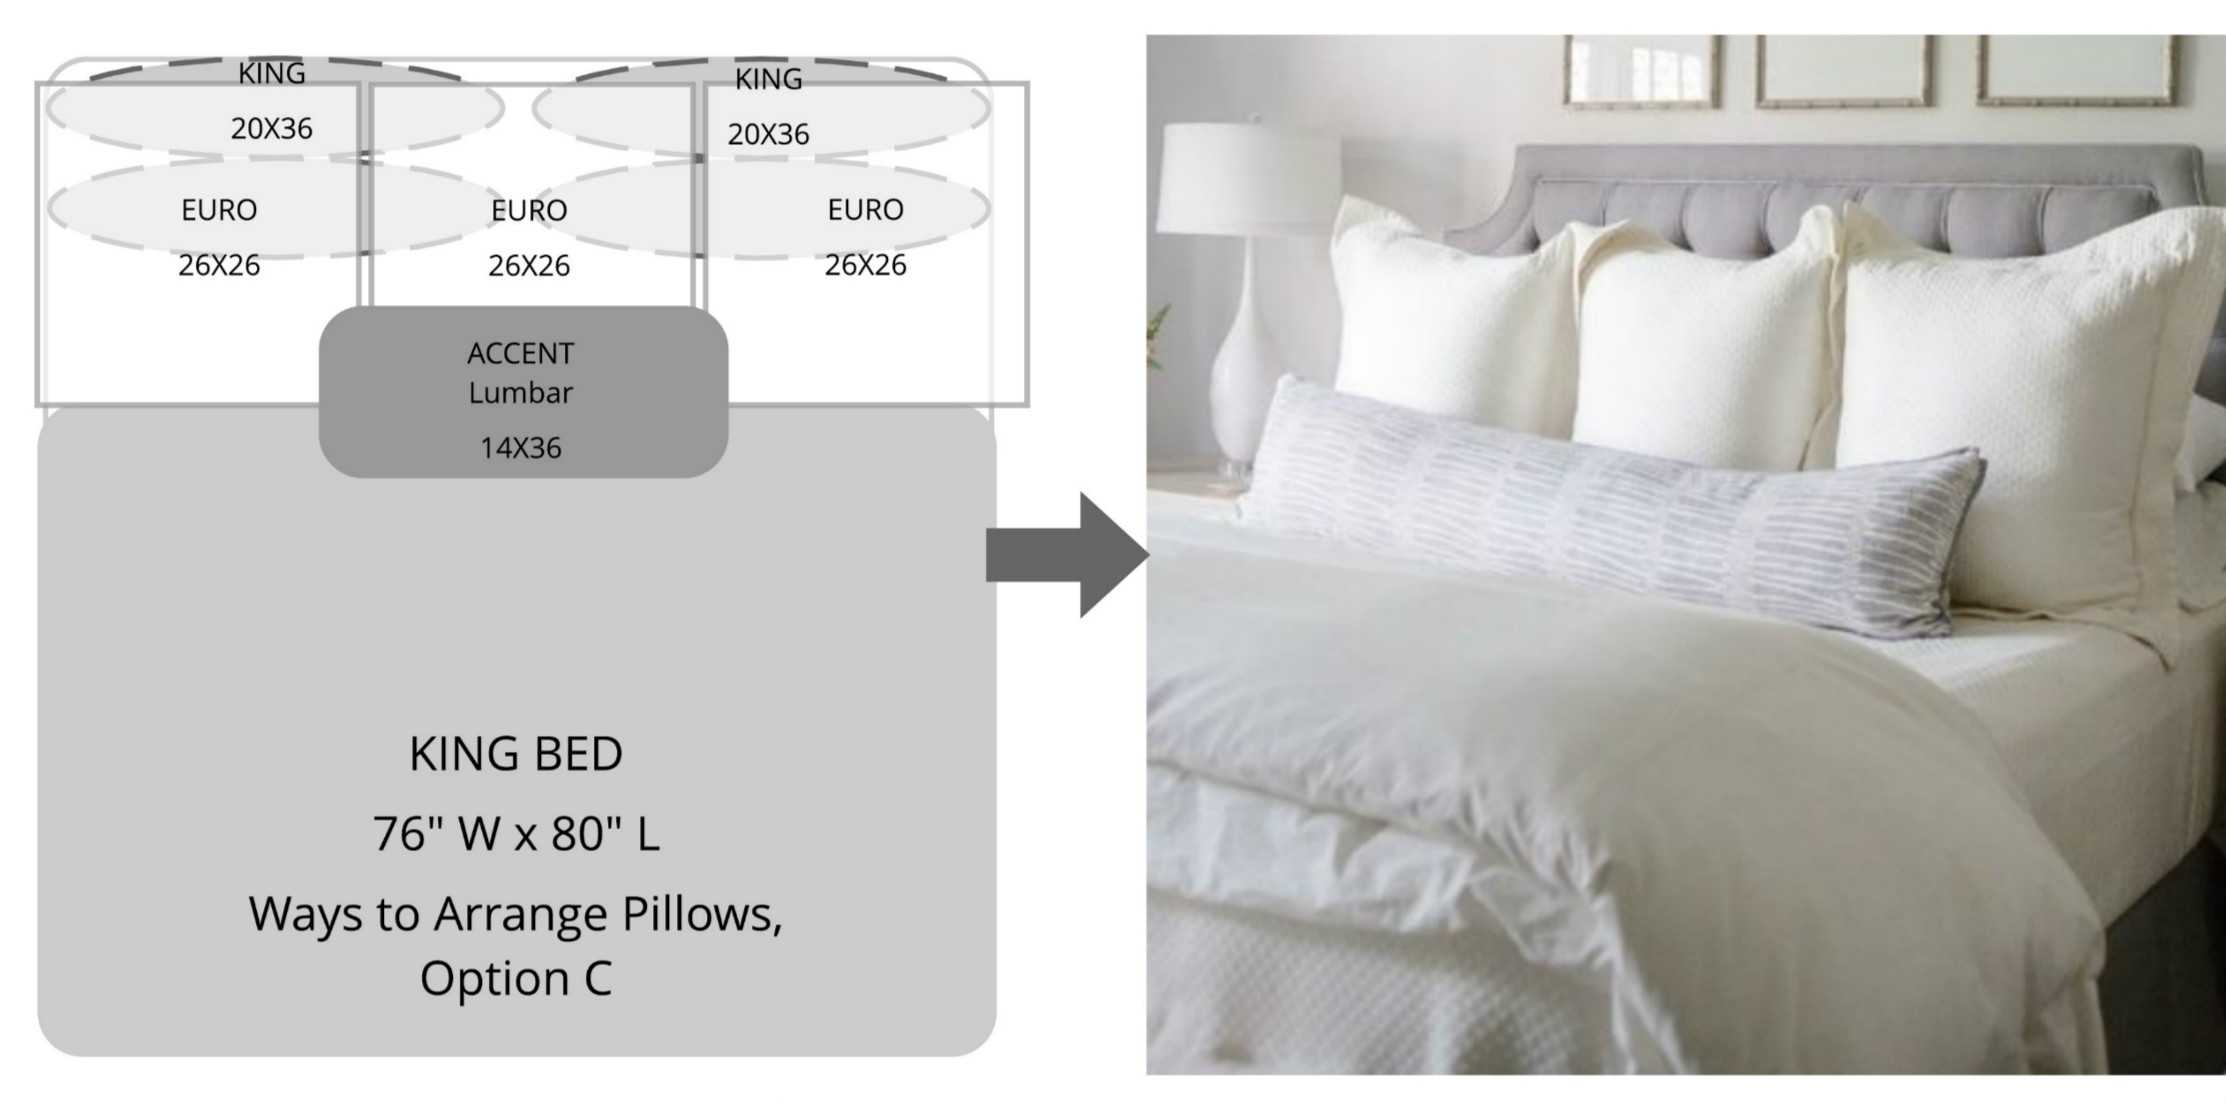 Узнайте о том, какие размеры у кровати queen size Преимущества и разновидности кровати queen size Кровать queen size в разных интерьерах